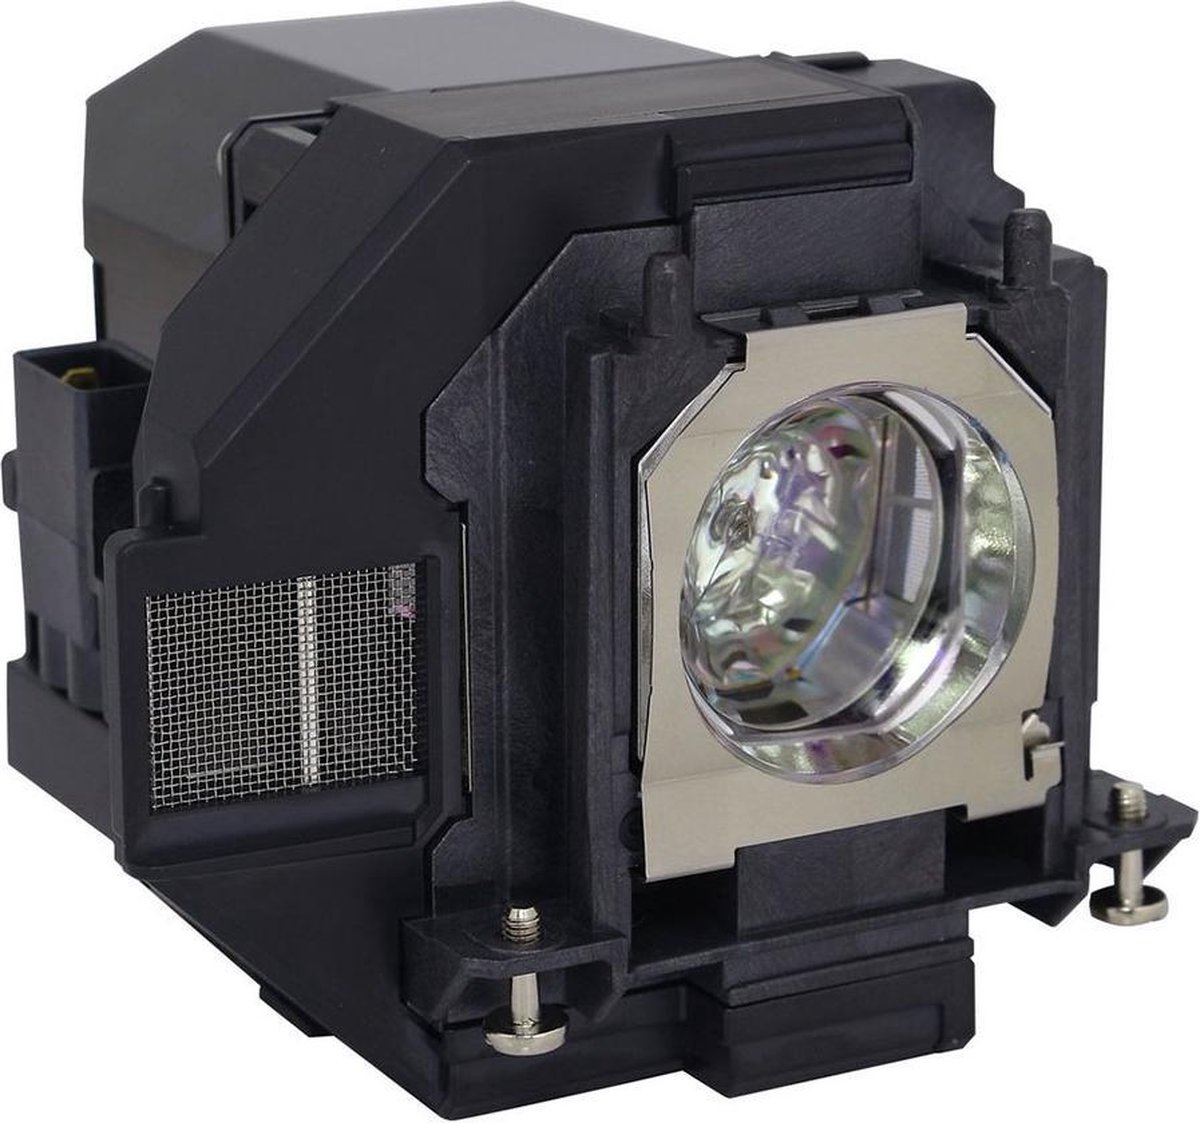 Beamerlamp geschikt voor de EPSON H856B beamer, lamp code LP96 / V13H010L96. Bevat originele UHP lamp, prestaties gelijk aan origineel.